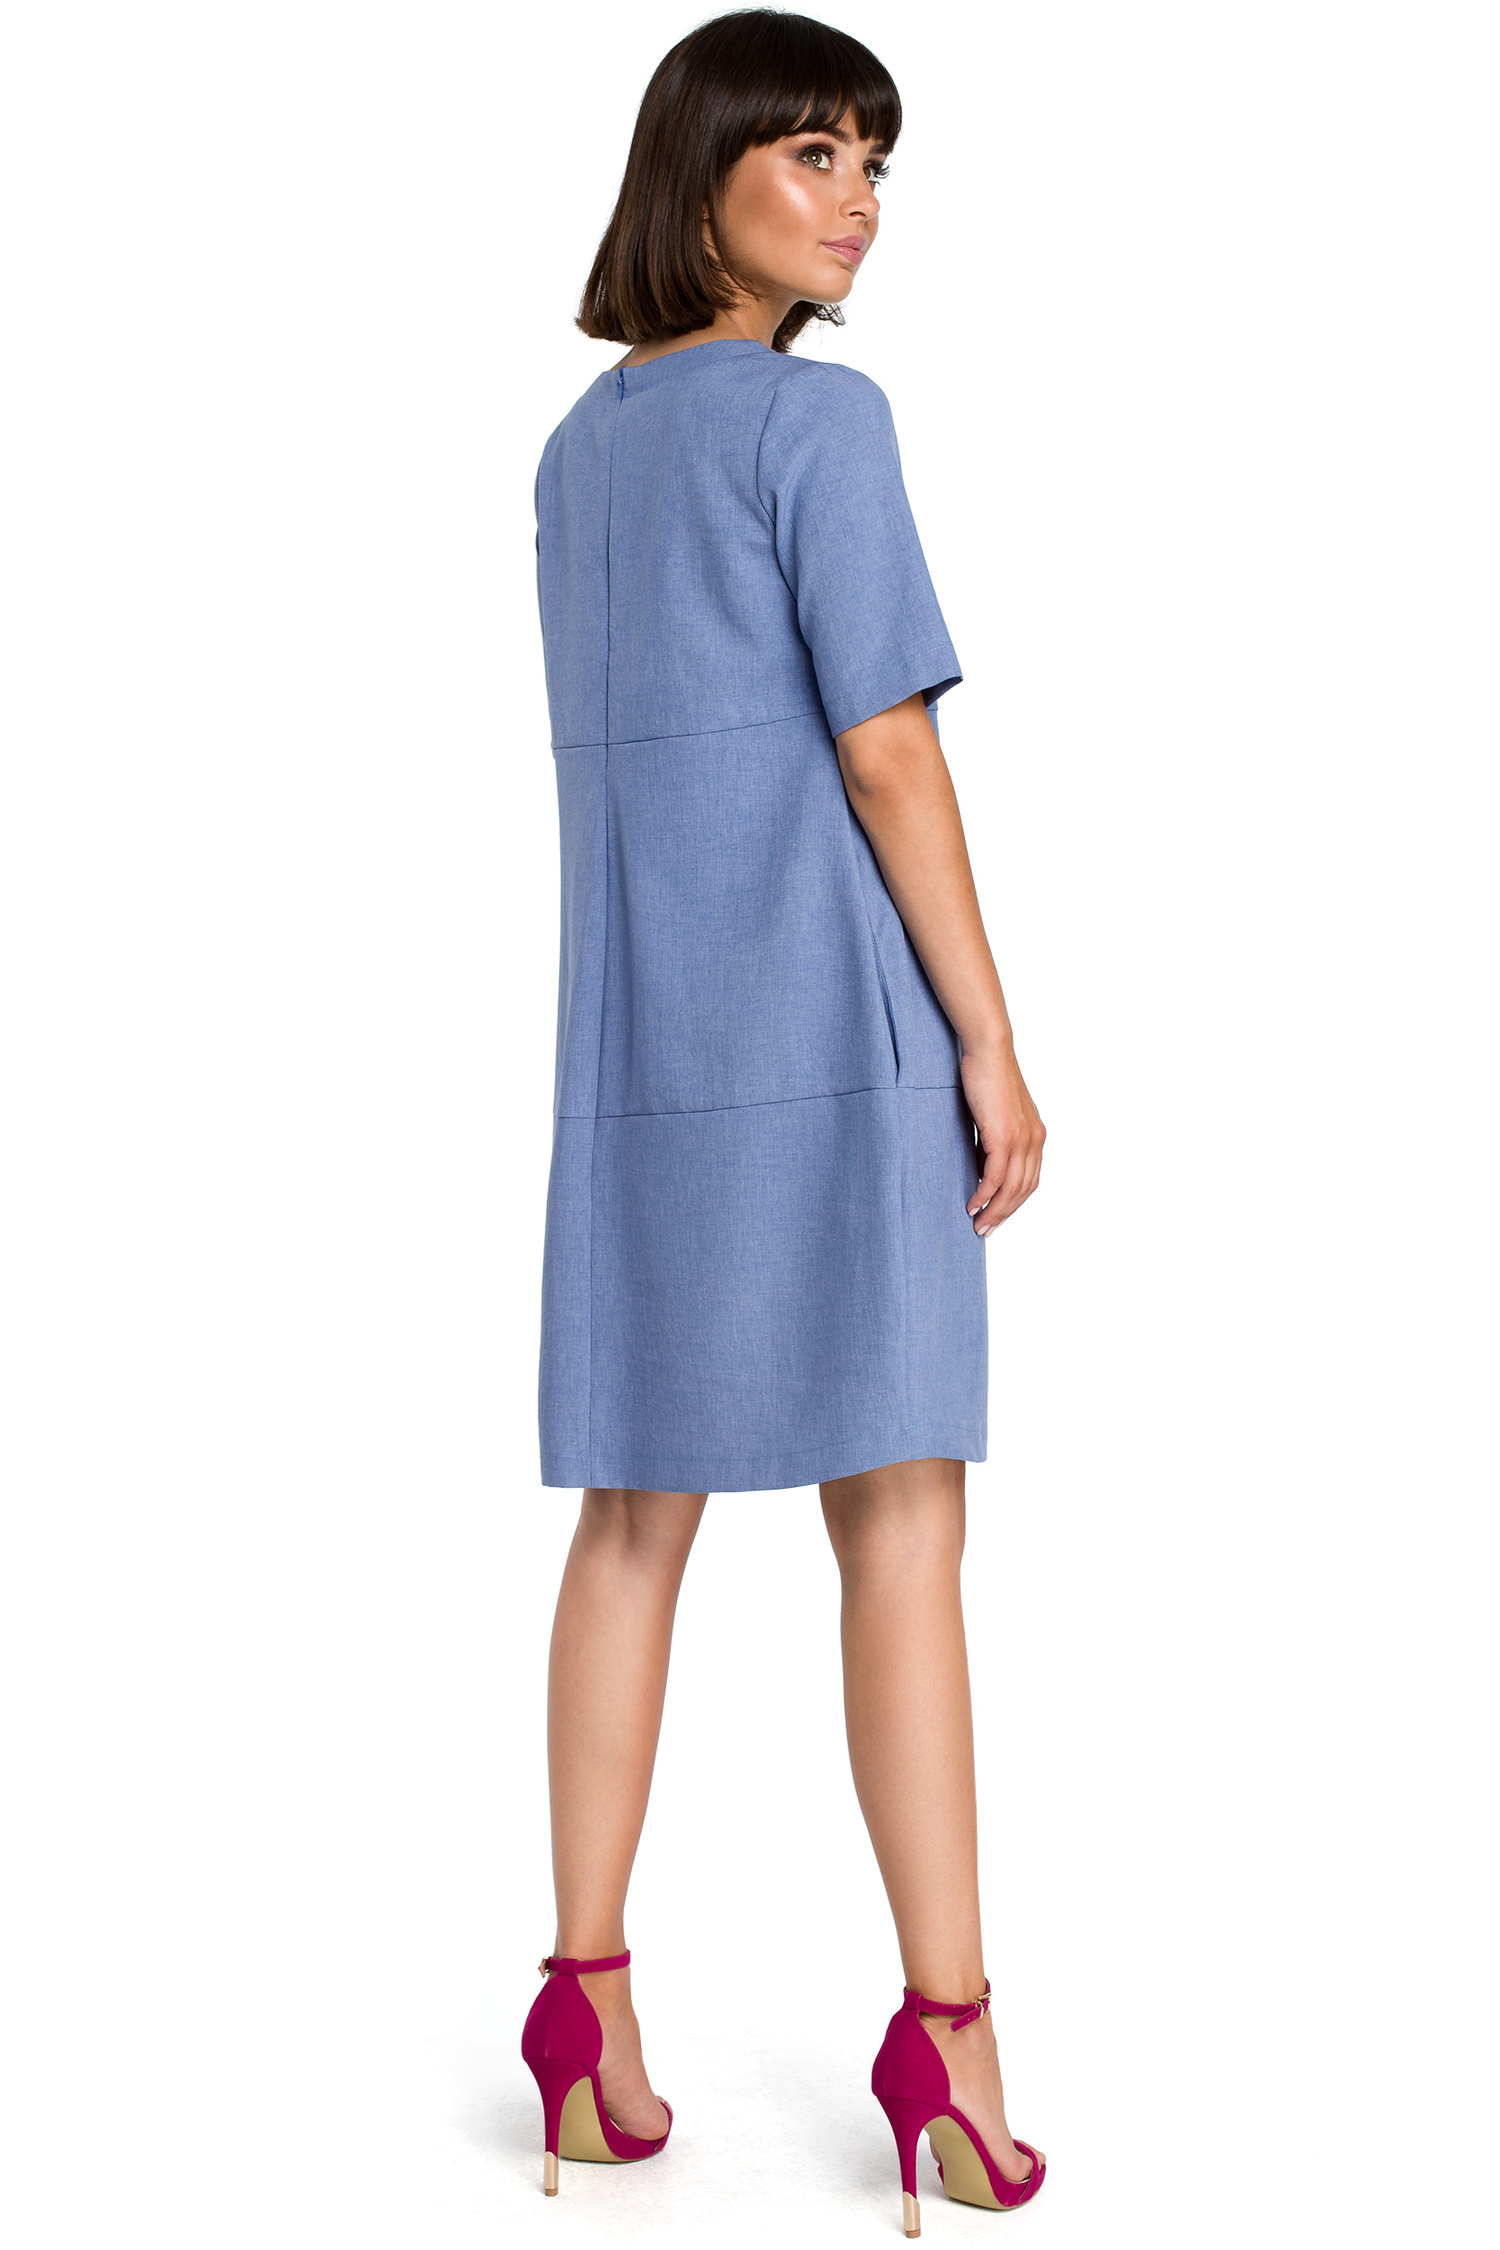 Opis: Lniana sukienka na lato bombka oversize z kieszeniami niebieska.